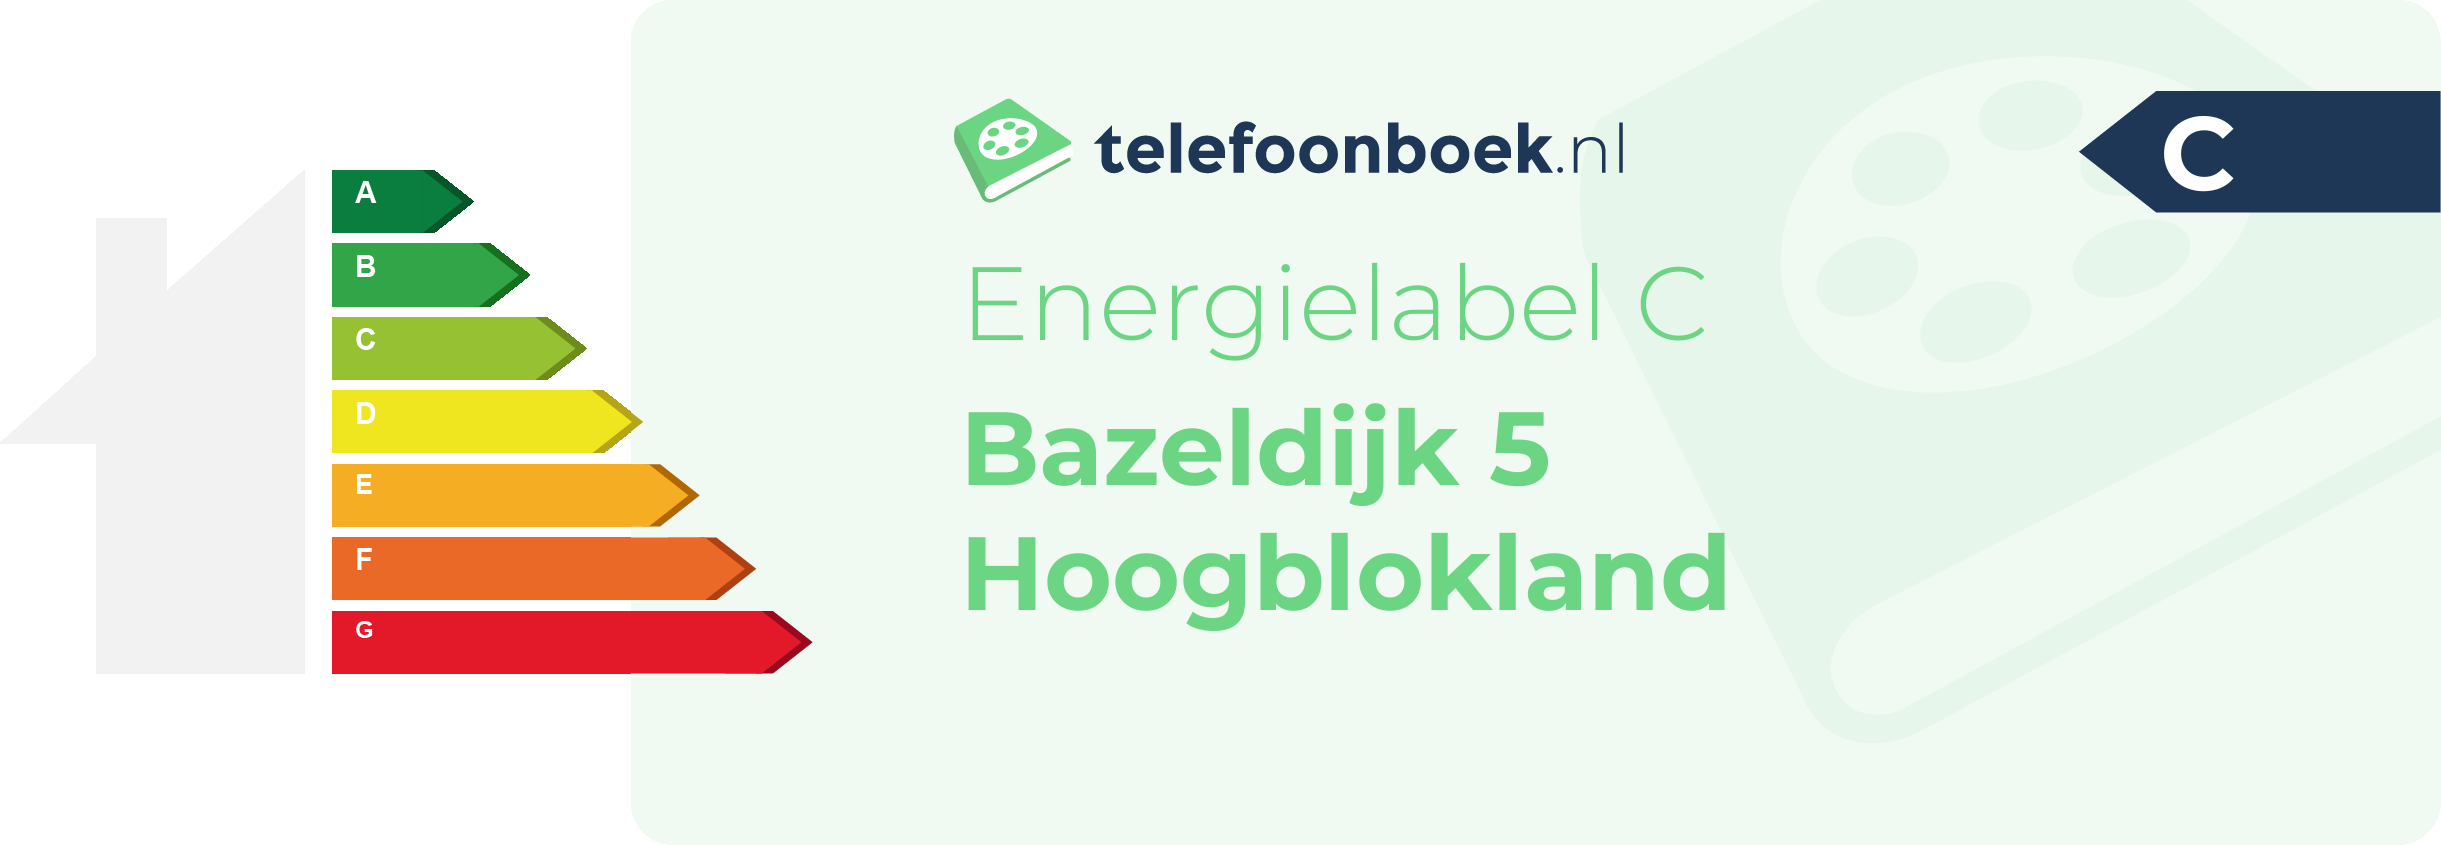 Energielabel Bazeldijk 5 Hoogblokland